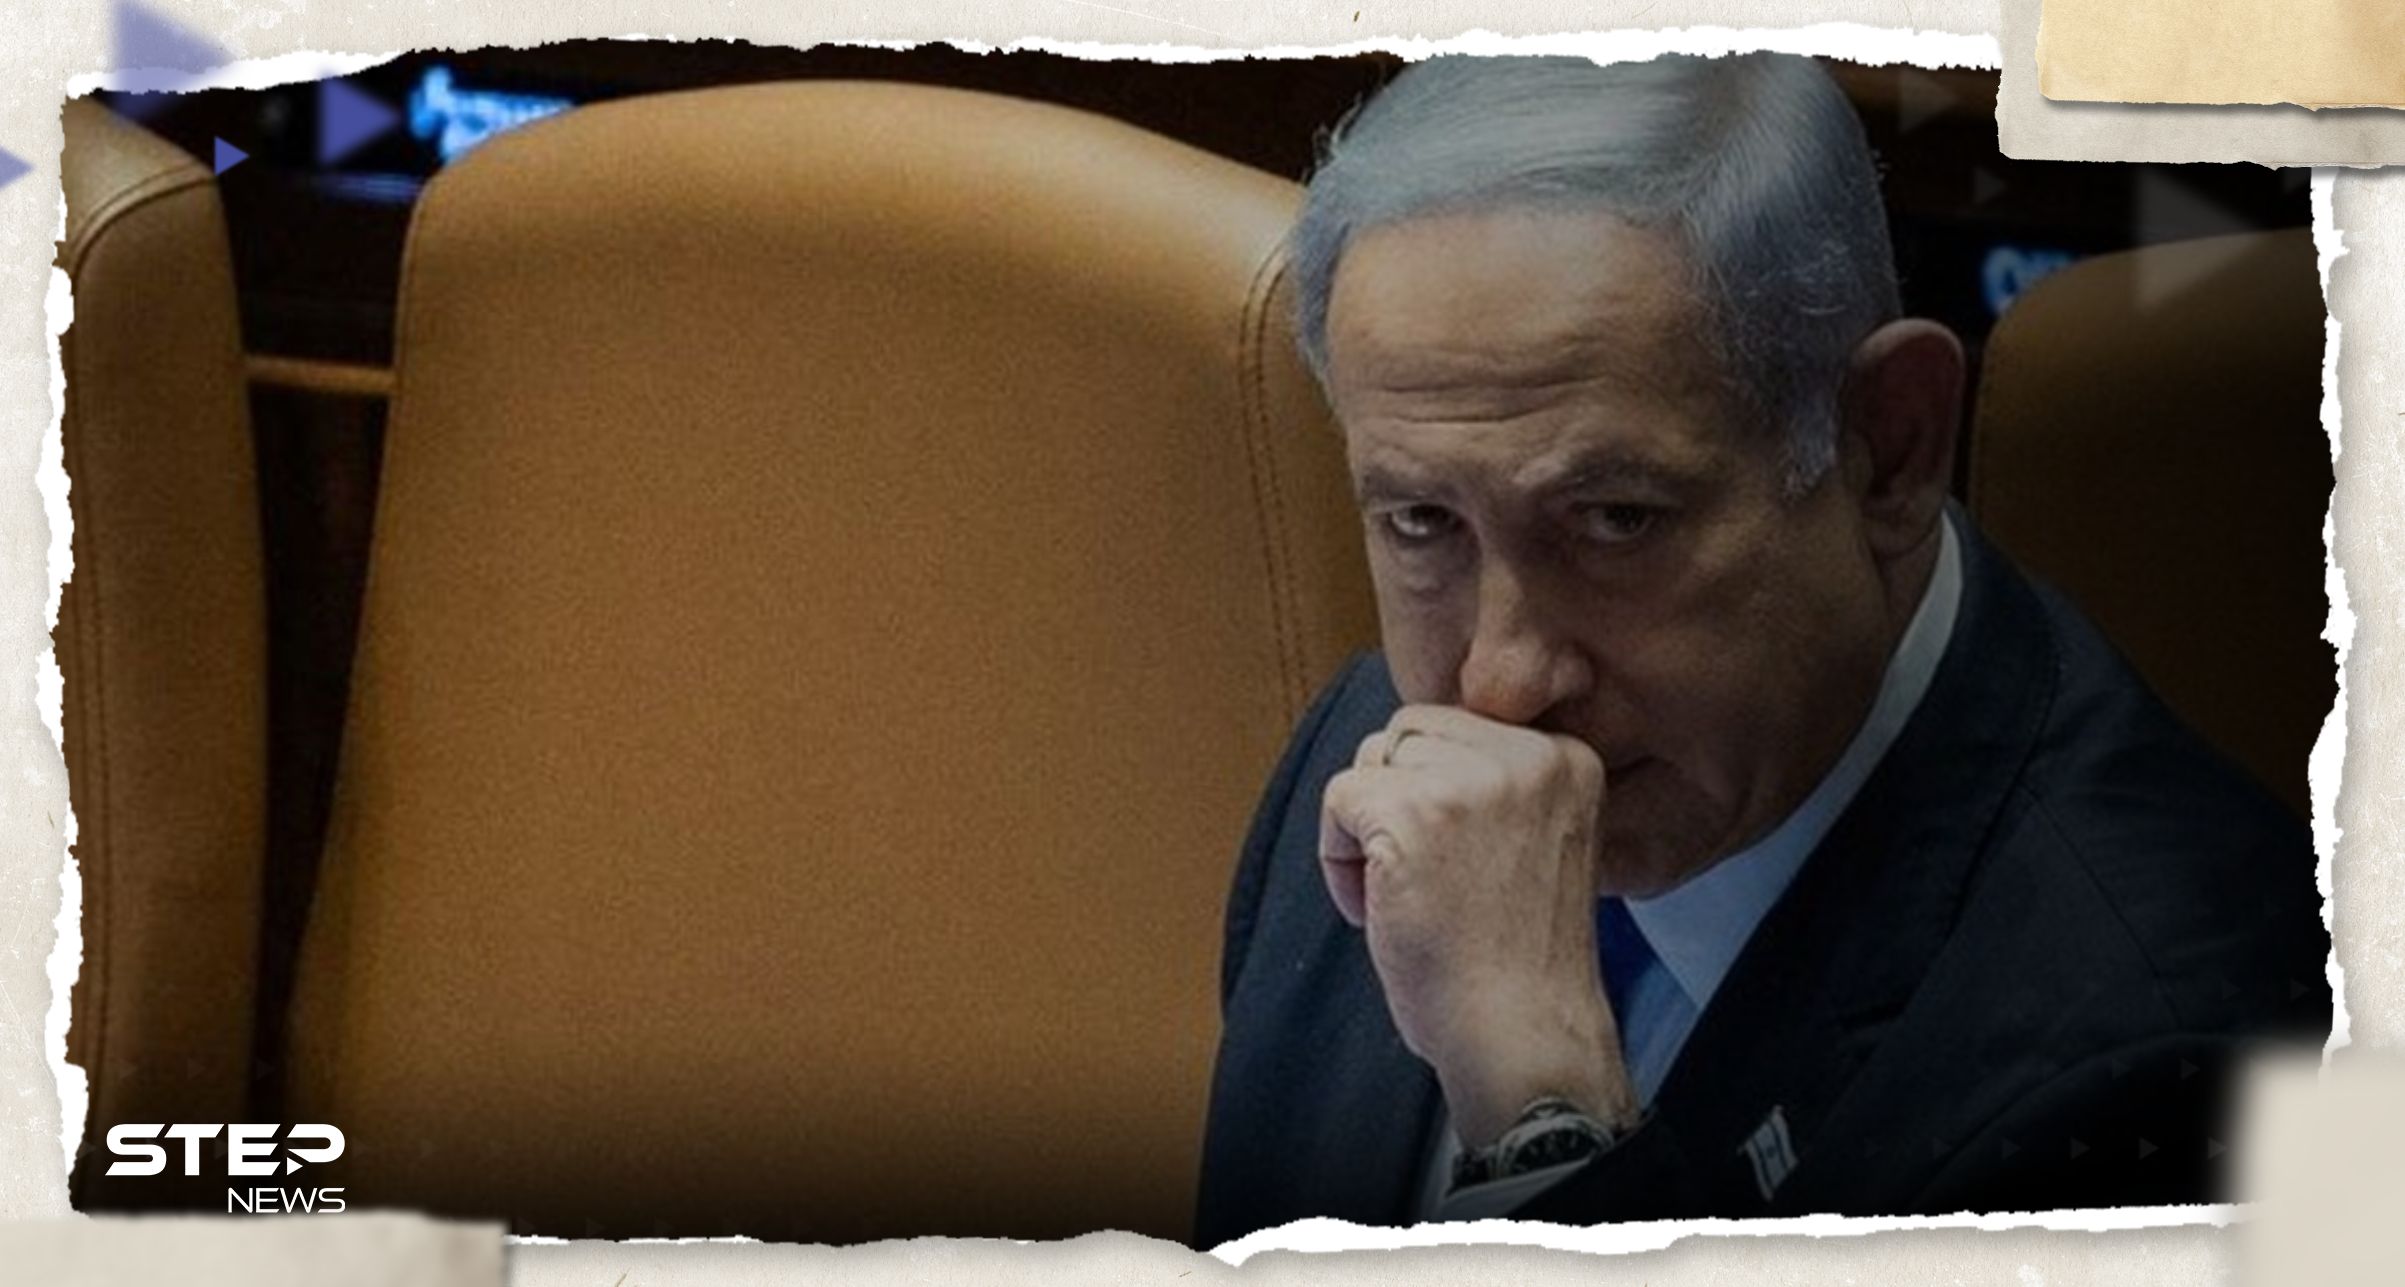 حركة إسرائيلية تتهم نتنياهو بحرق وثائق خوفاً من المساءلة بعد طوفان الأقصى